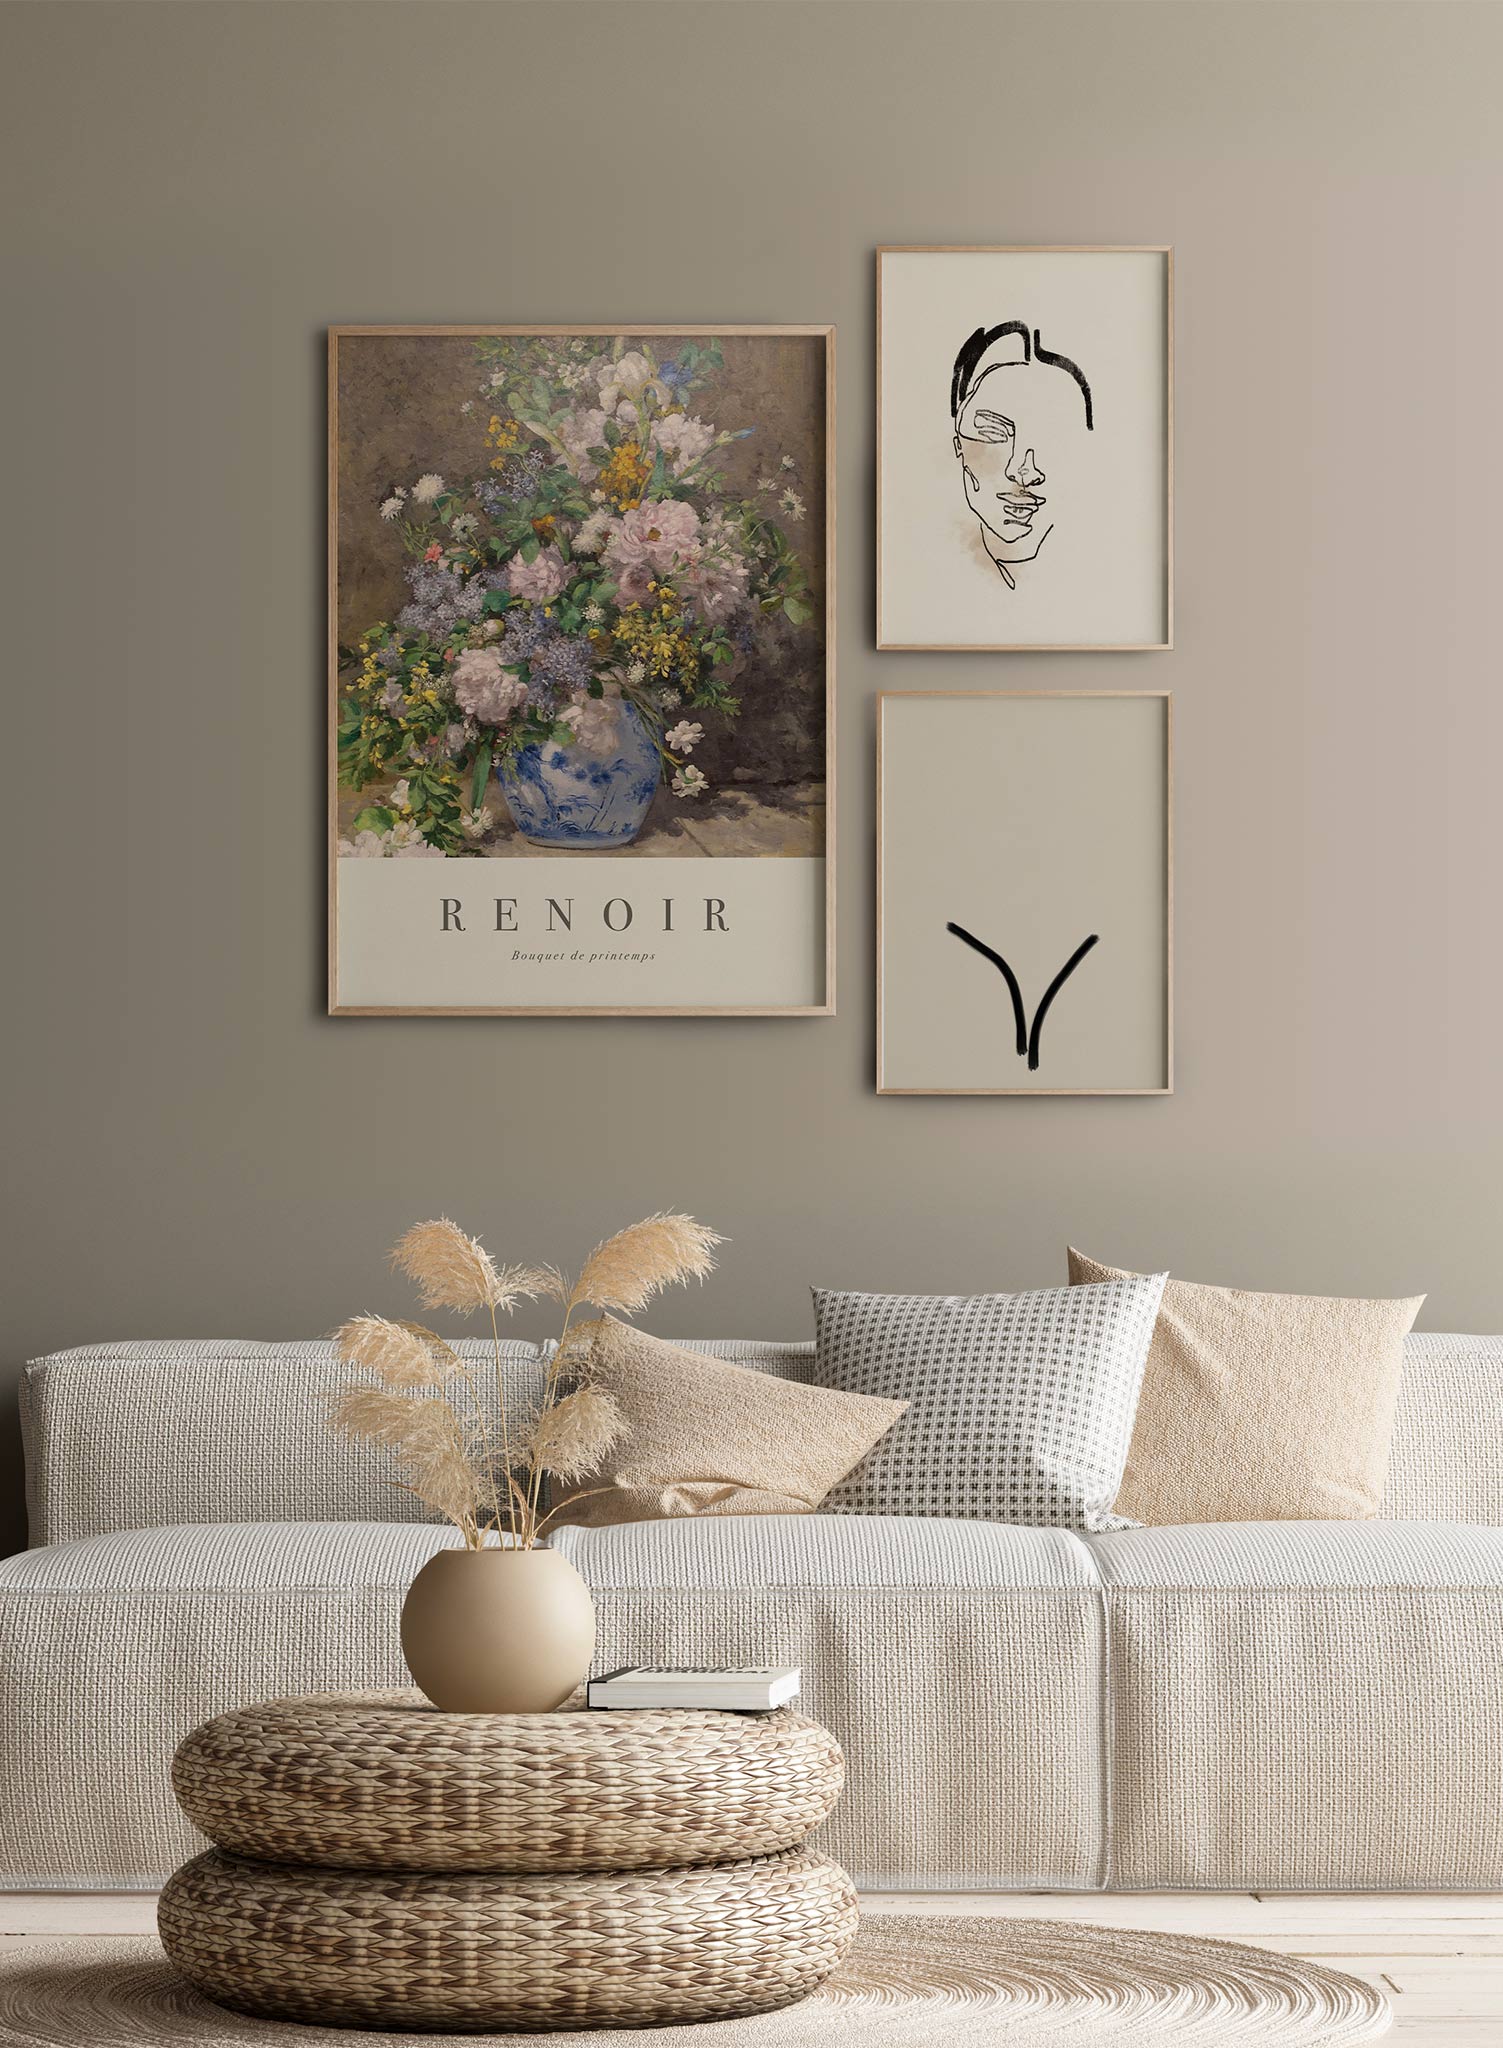 Renoir’s Spring Bouquet is a minimalist artwork by Opposite Wall of Pierre-Auguste Renoir's Bouquet de printemps.